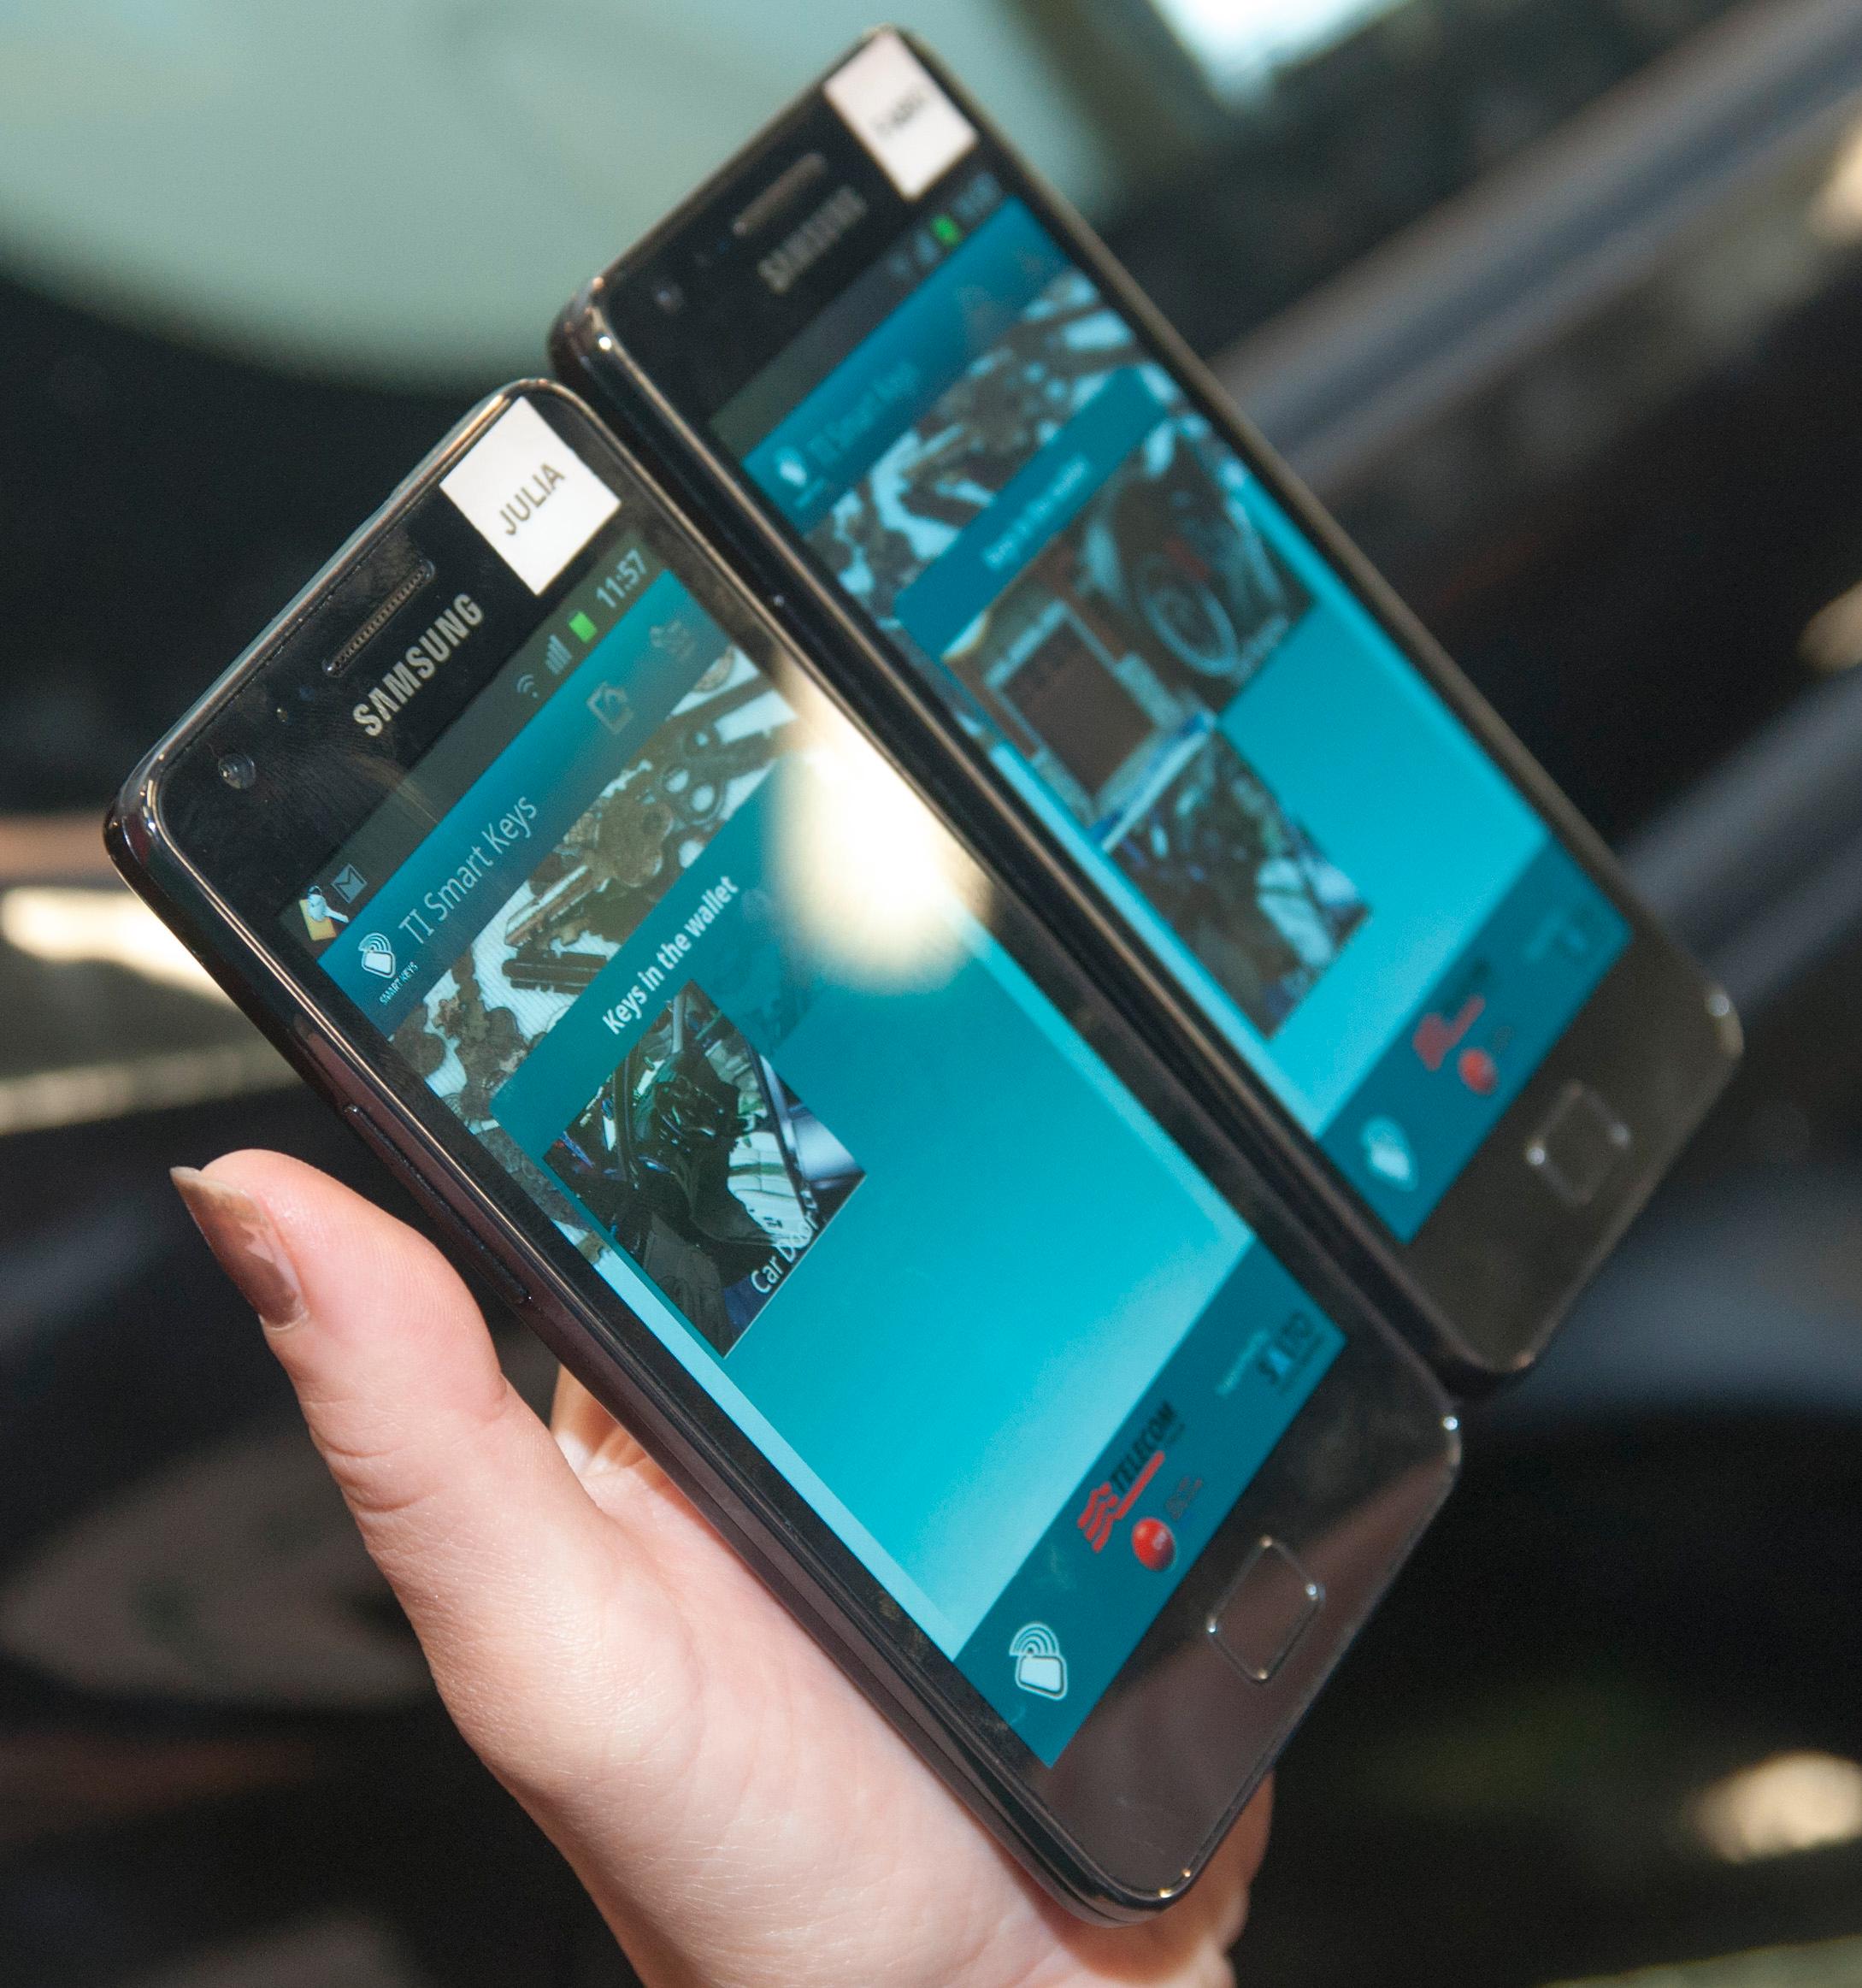 Hvis NFC-baserte nøkler tar av kan du dele nøkkelen fra én telefon til en annen over mobilnettverket. Dermed kan naboen enkelt flytte bilen hvis den står i veien når du har reist bort.Foto: Finn Jarle Kvalheim, Amobil.no